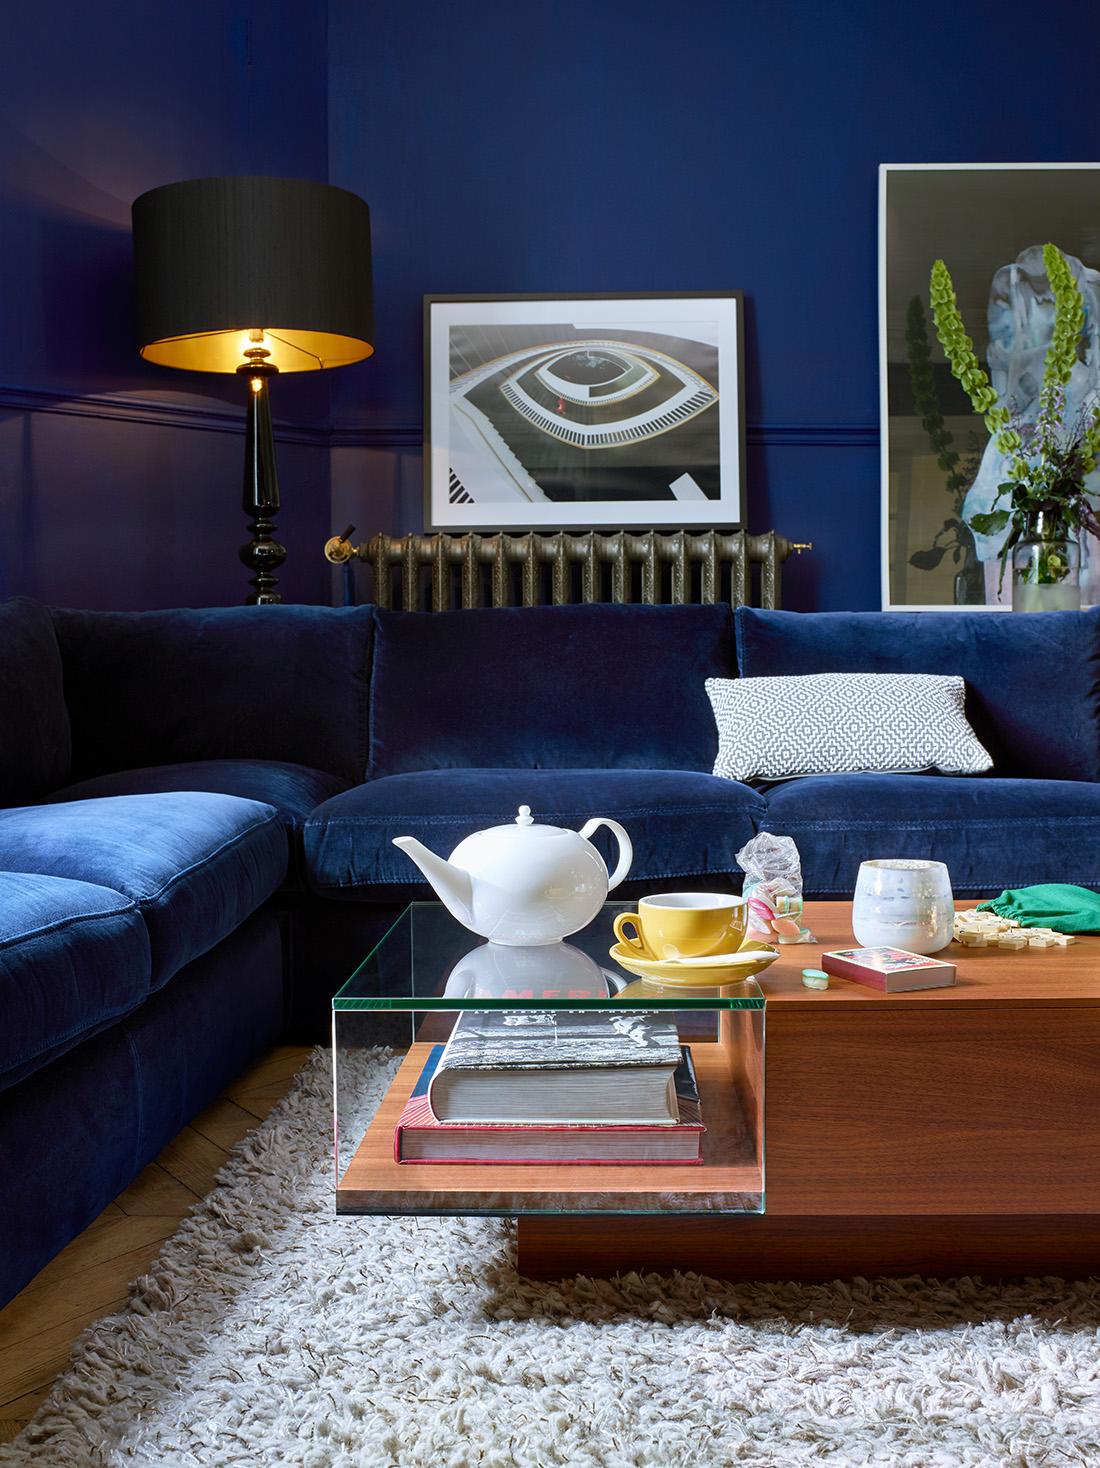 Wohnzimmer in Blau #beistelltisch #wohnzimmer #blauessofa #samtsofa #skandinavischesdesign ©Habitat